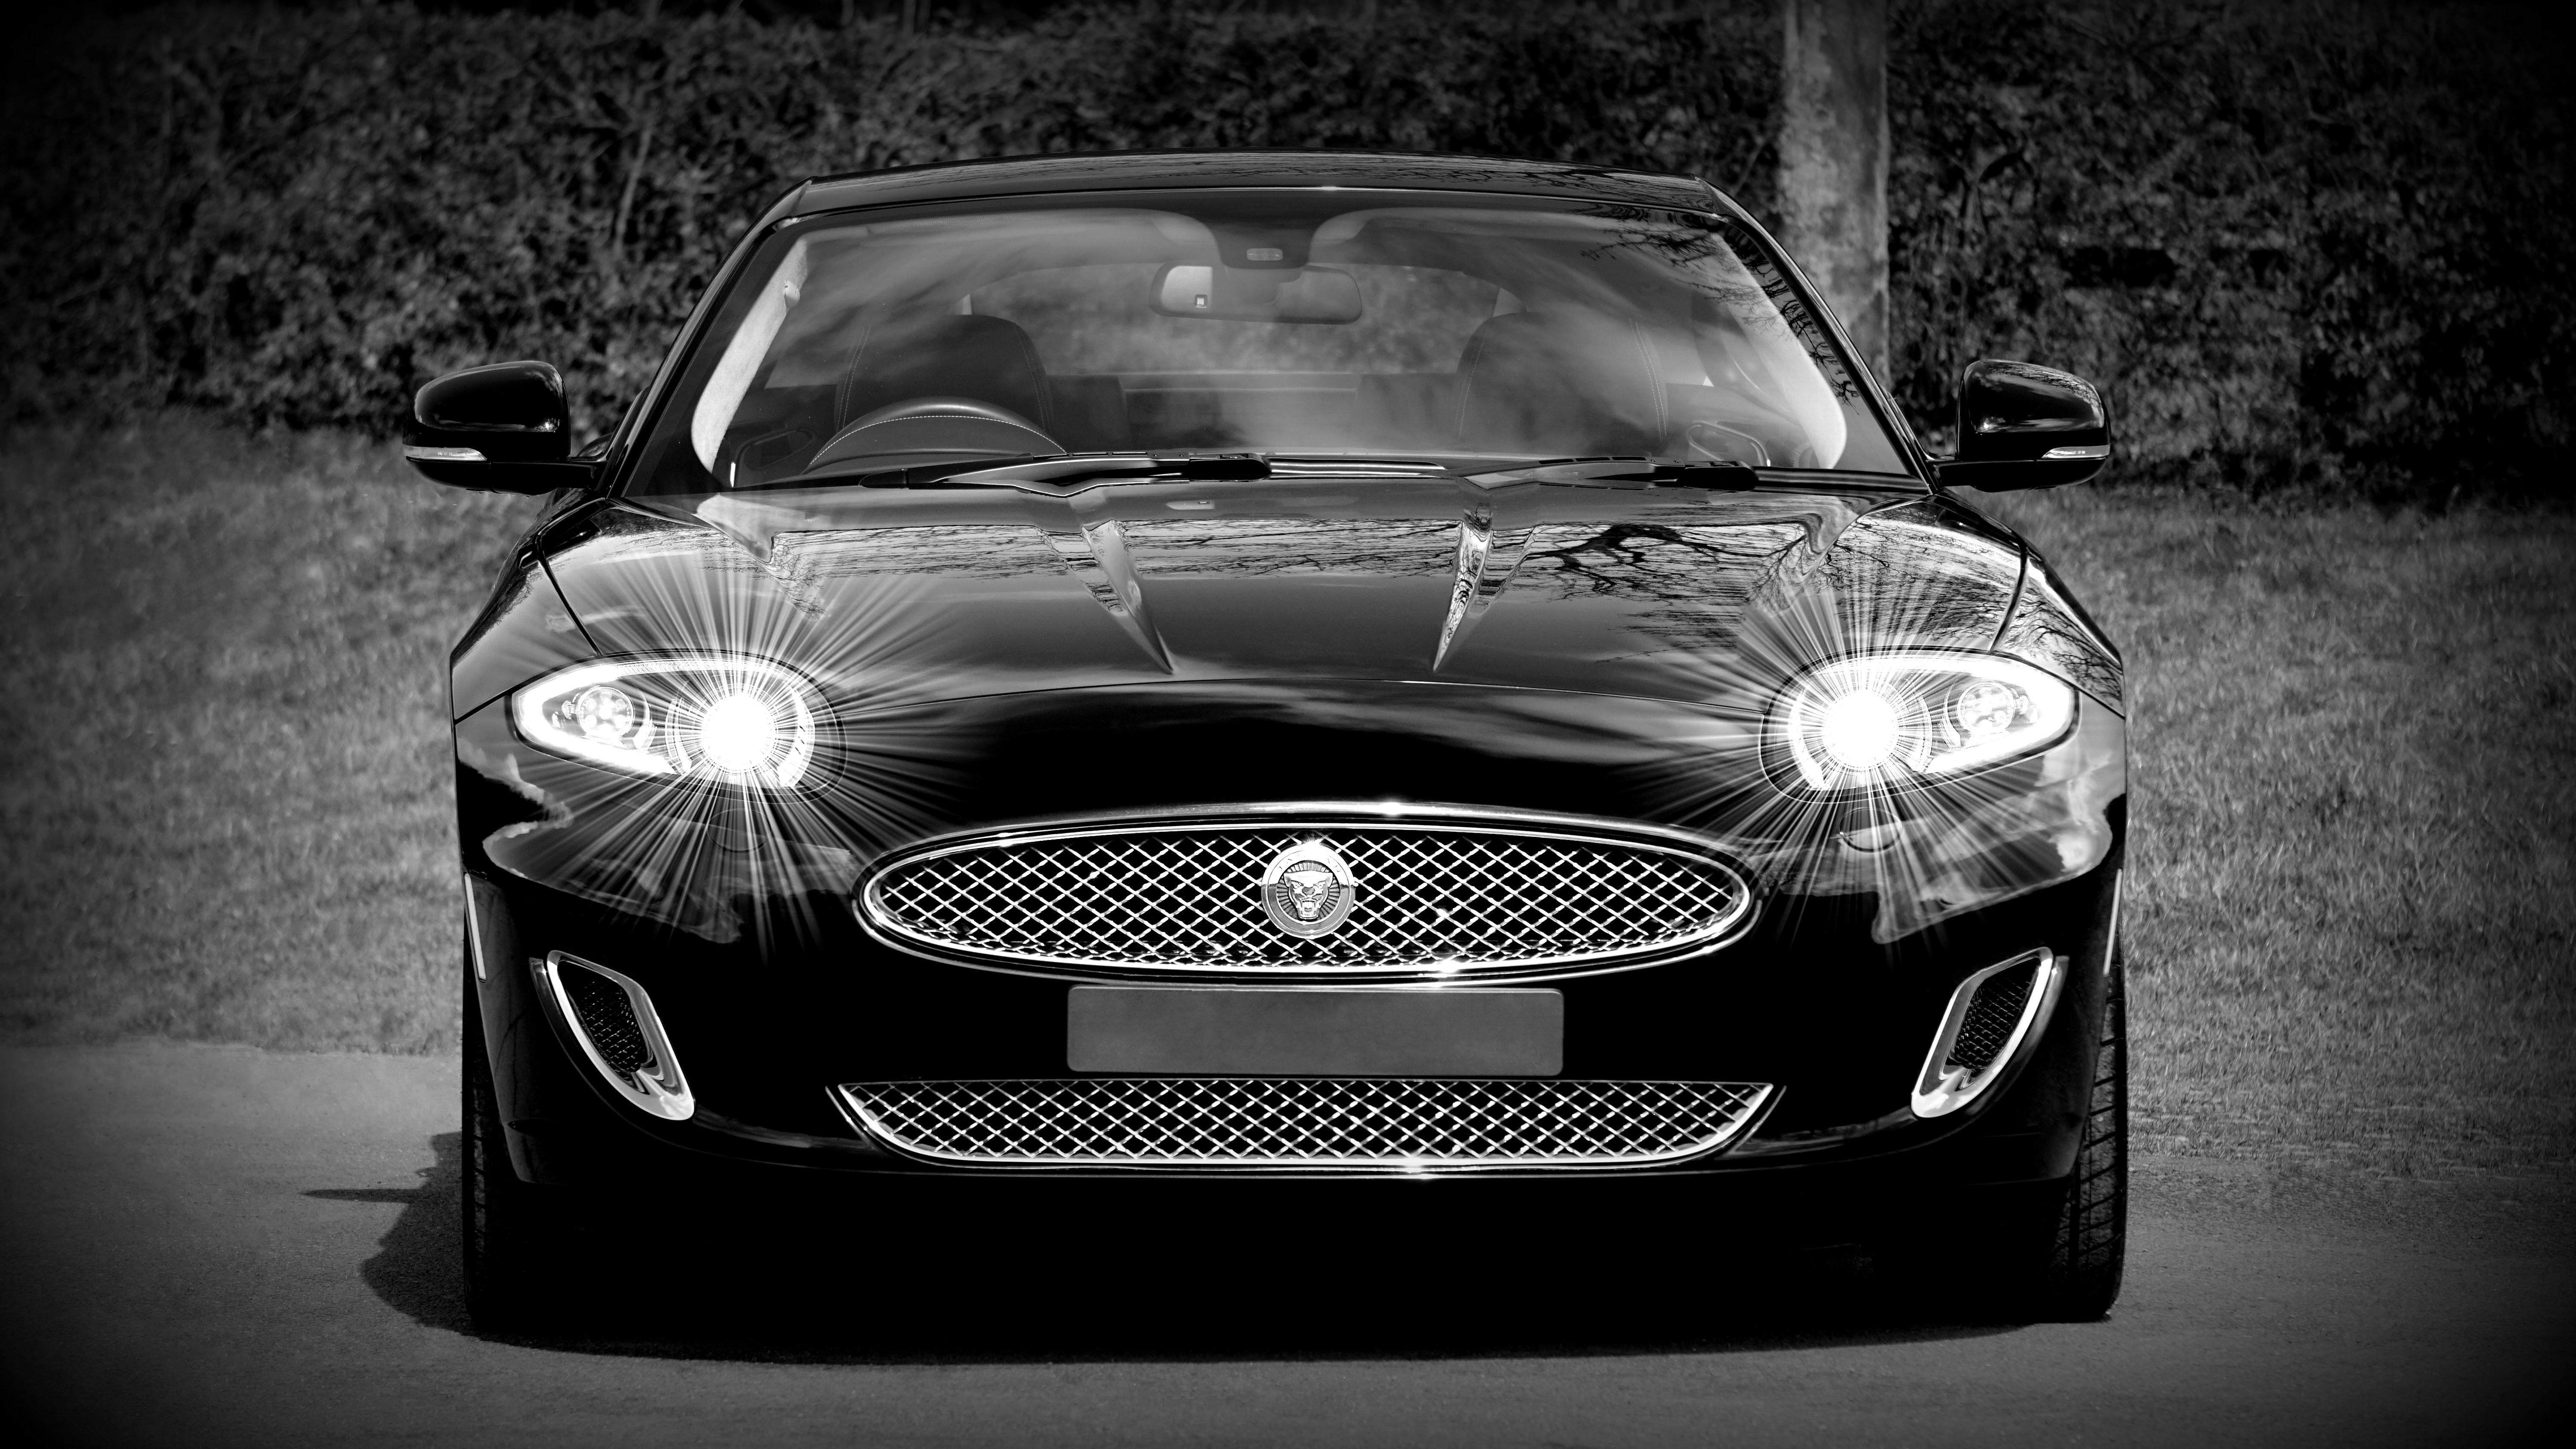 500 Jaguar Pictures  Download Free Images on Unsplash